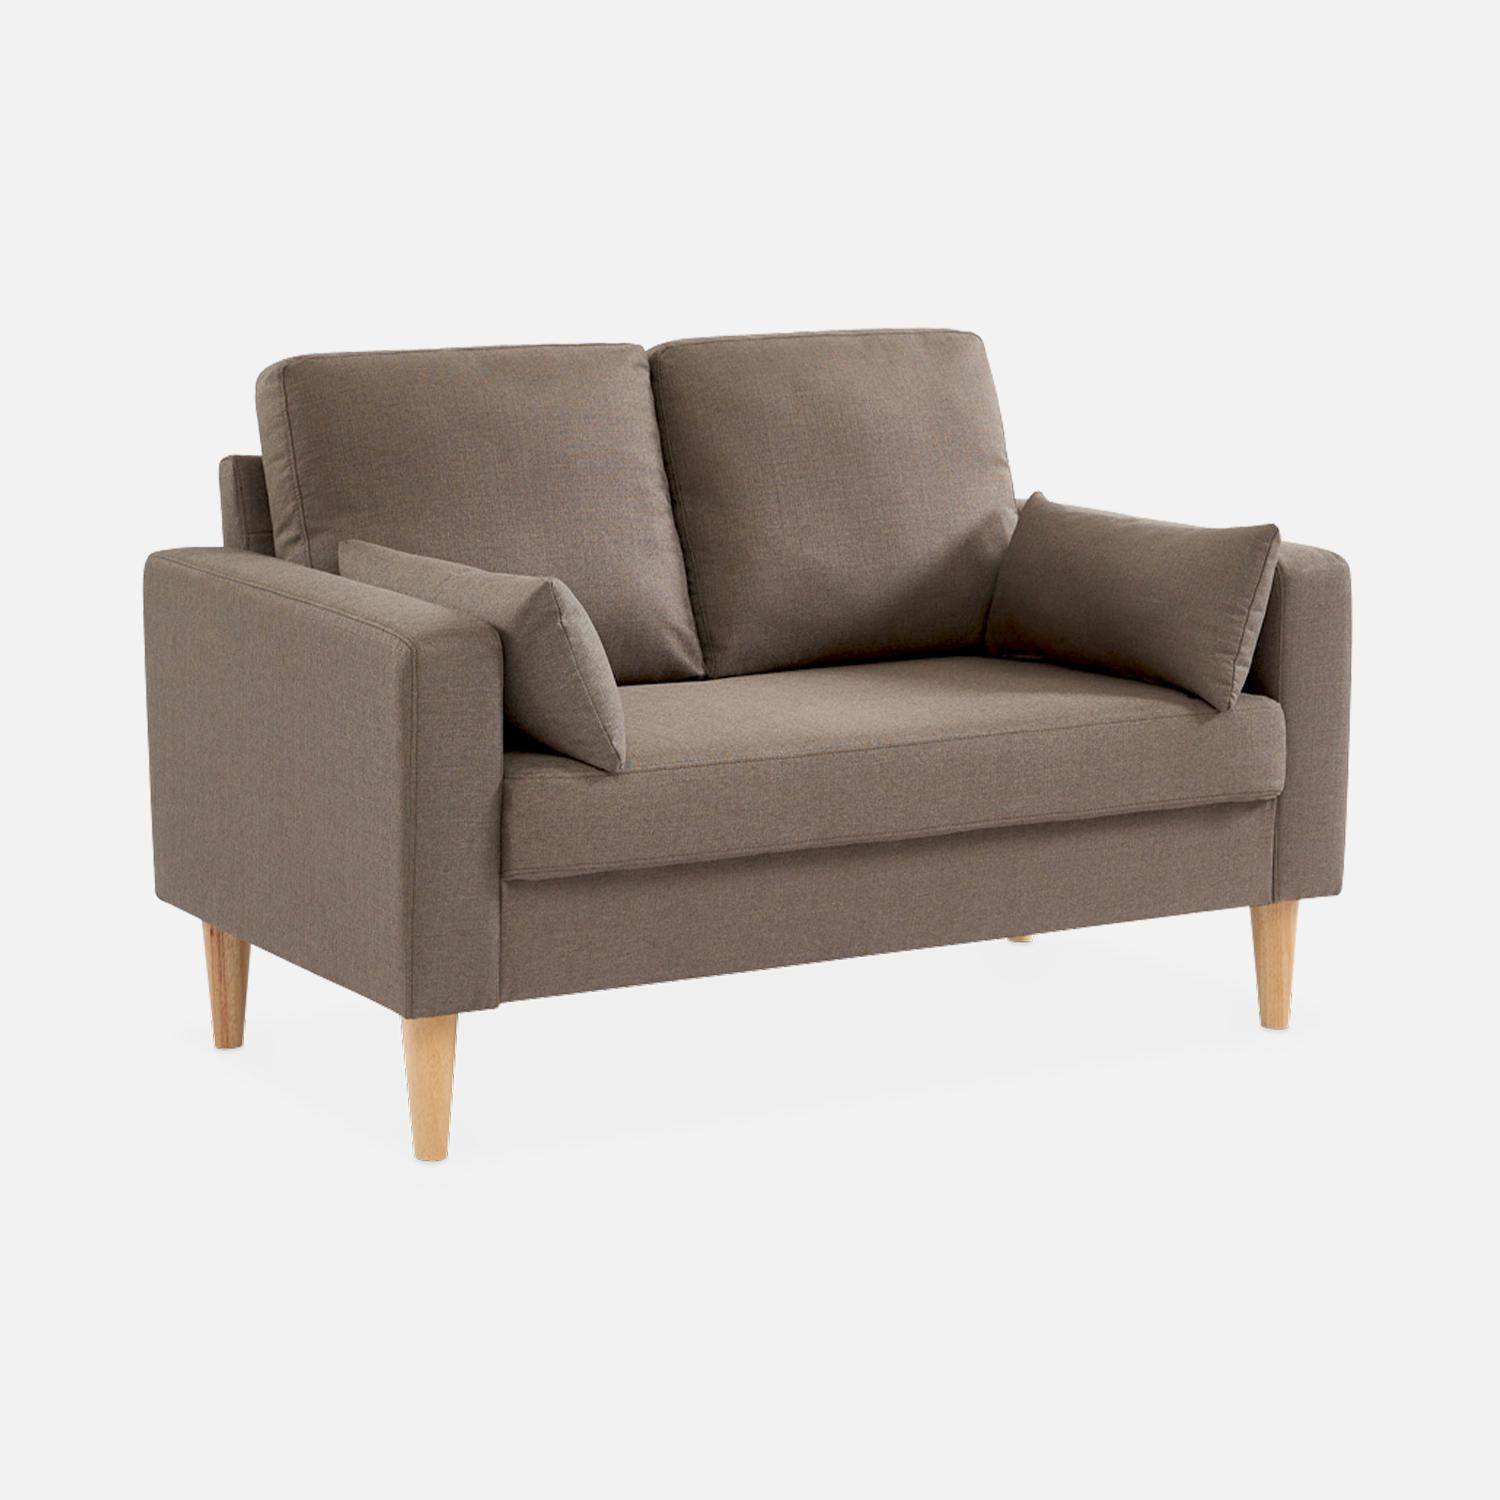 Canapé en tissu marron - Bjorn - Canapé 2 places fixe droit pieds bois, style scandinave   Photo1